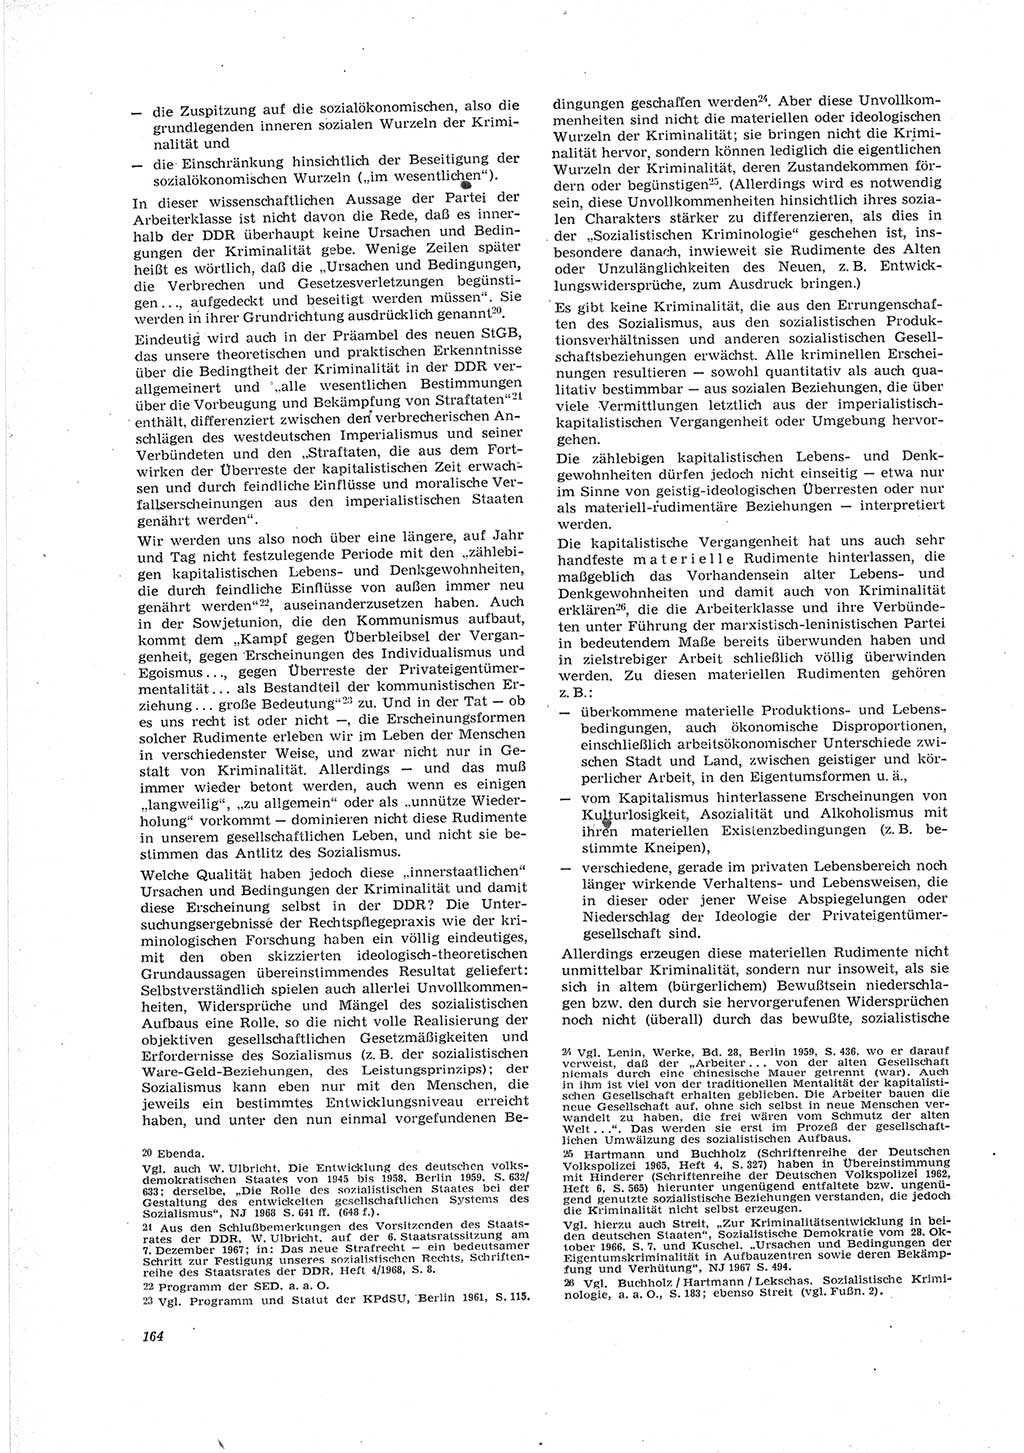 Neue Justiz (NJ), Zeitschrift für Recht und Rechtswissenschaft [Deutsche Demokratische Republik (DDR)], 23. Jahrgang 1969, Seite 164 (NJ DDR 1969, S. 164)